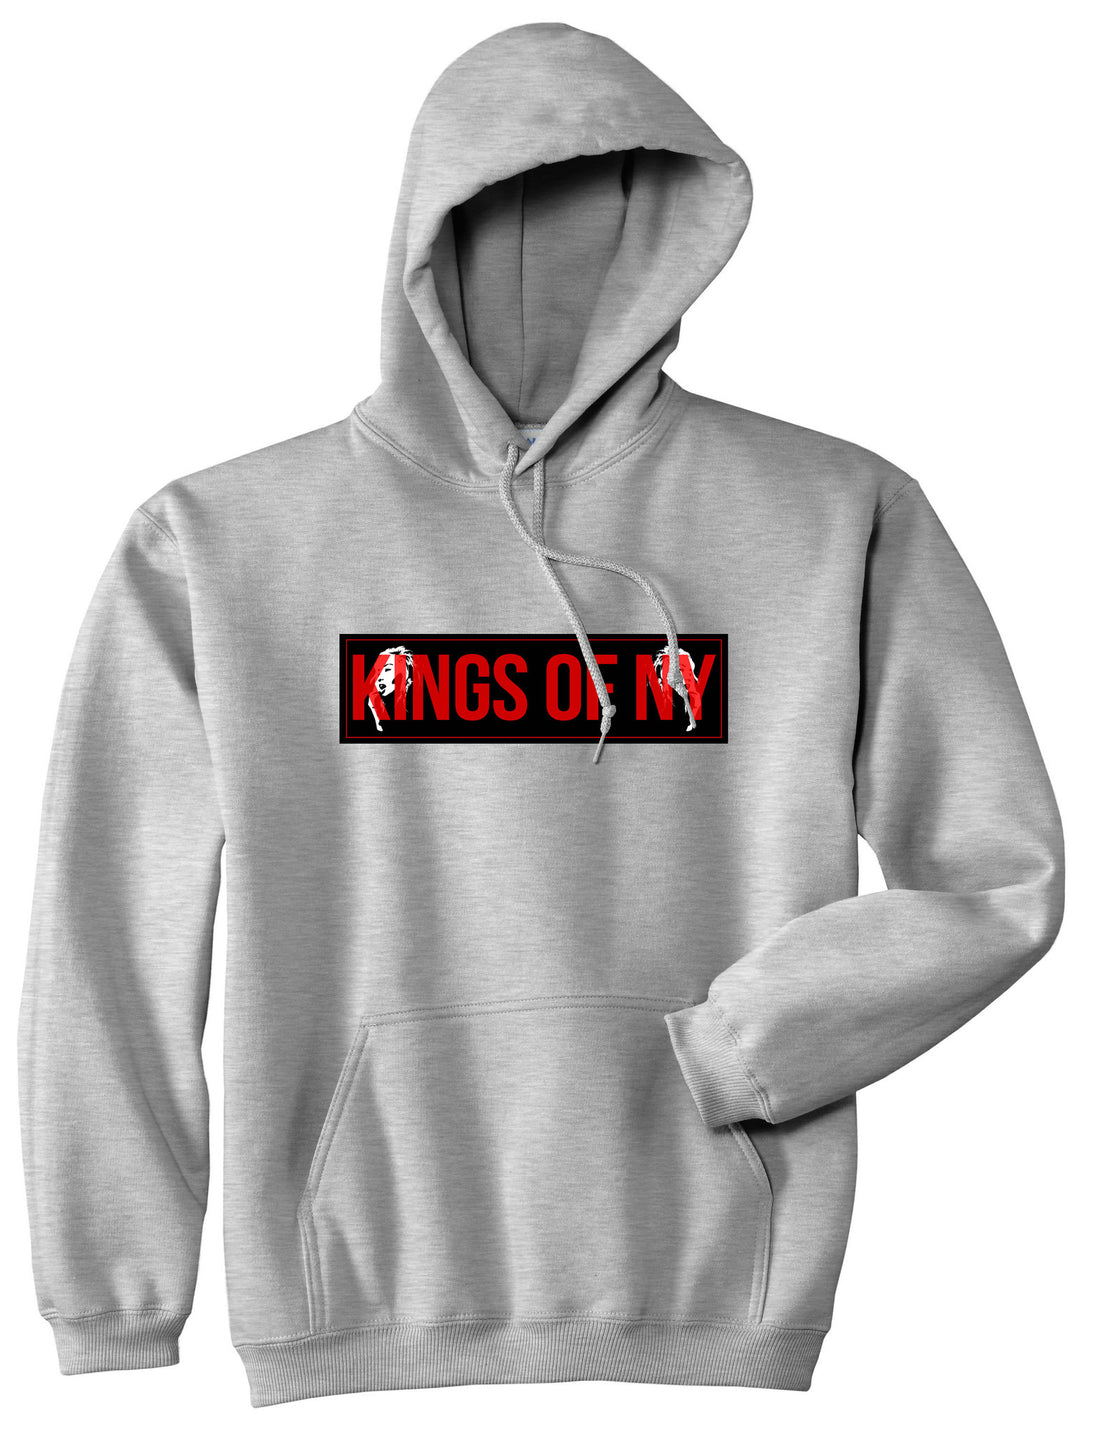 Red Girl Logo Print Boys Kids Pullover Hoodie Hoody in Grey by Kings Of NY